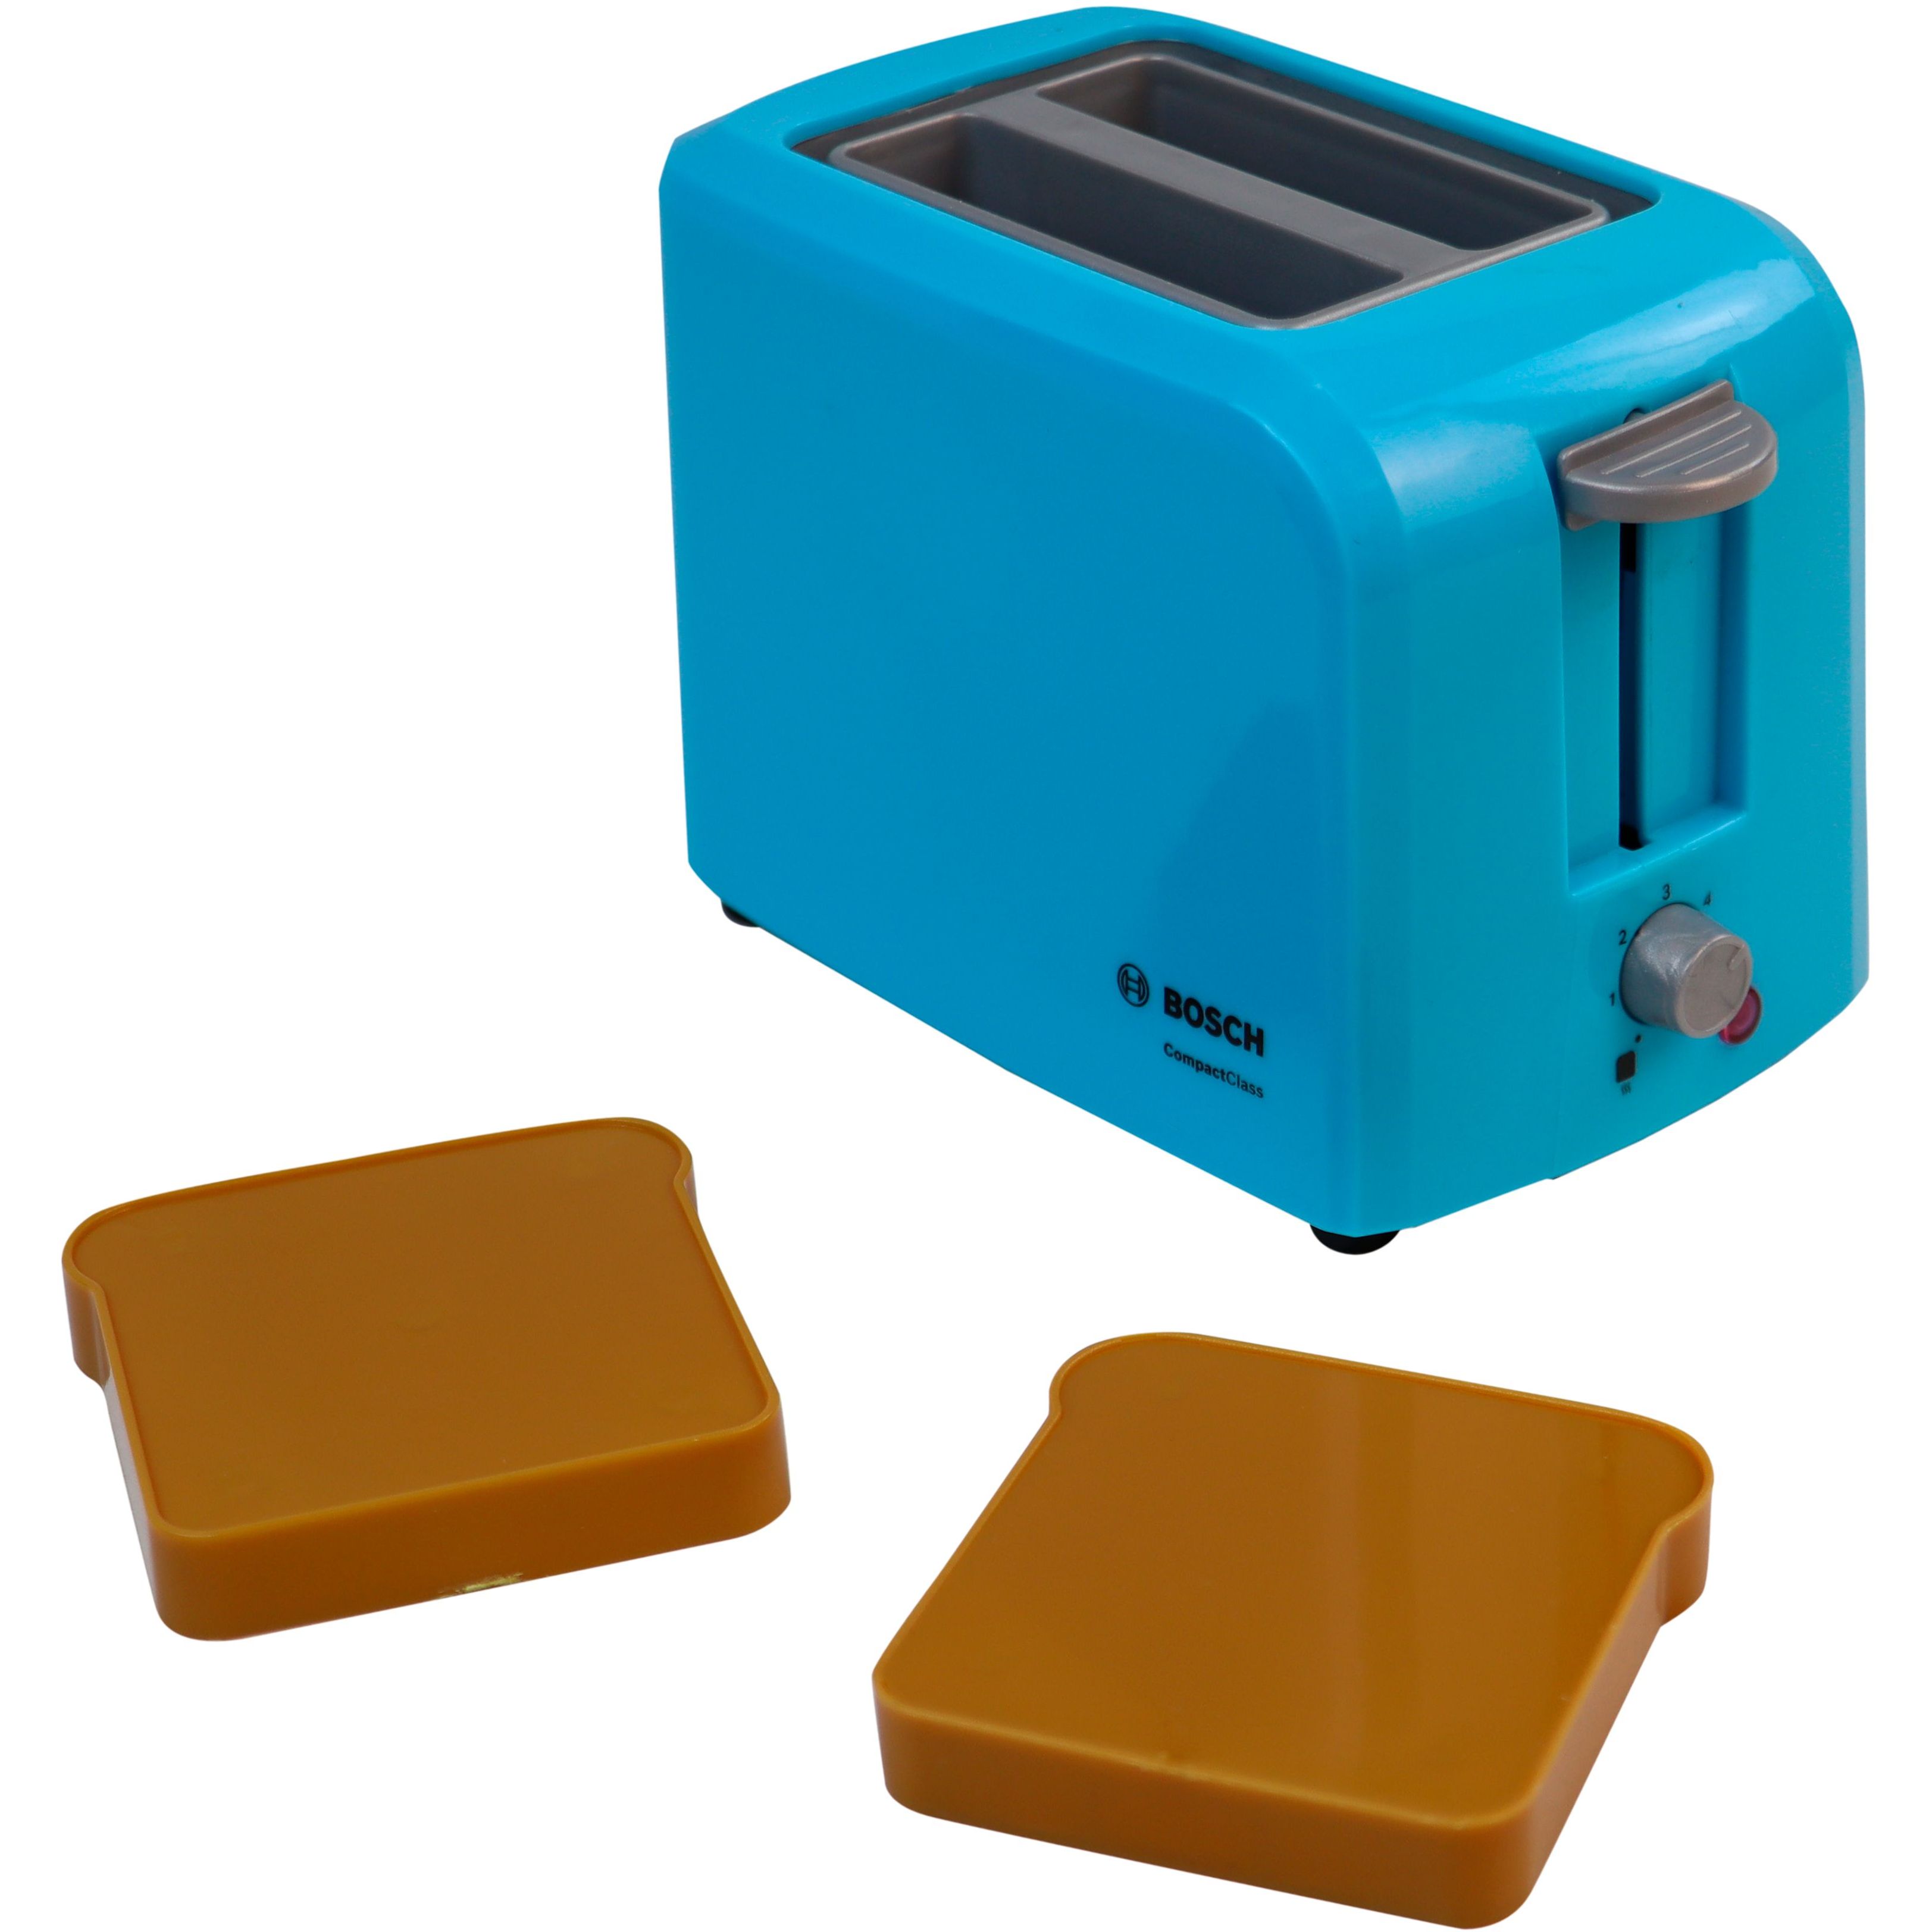 Іграшковий набір Bosch Mini для сніданку бірюзовий (9519) - фото 6